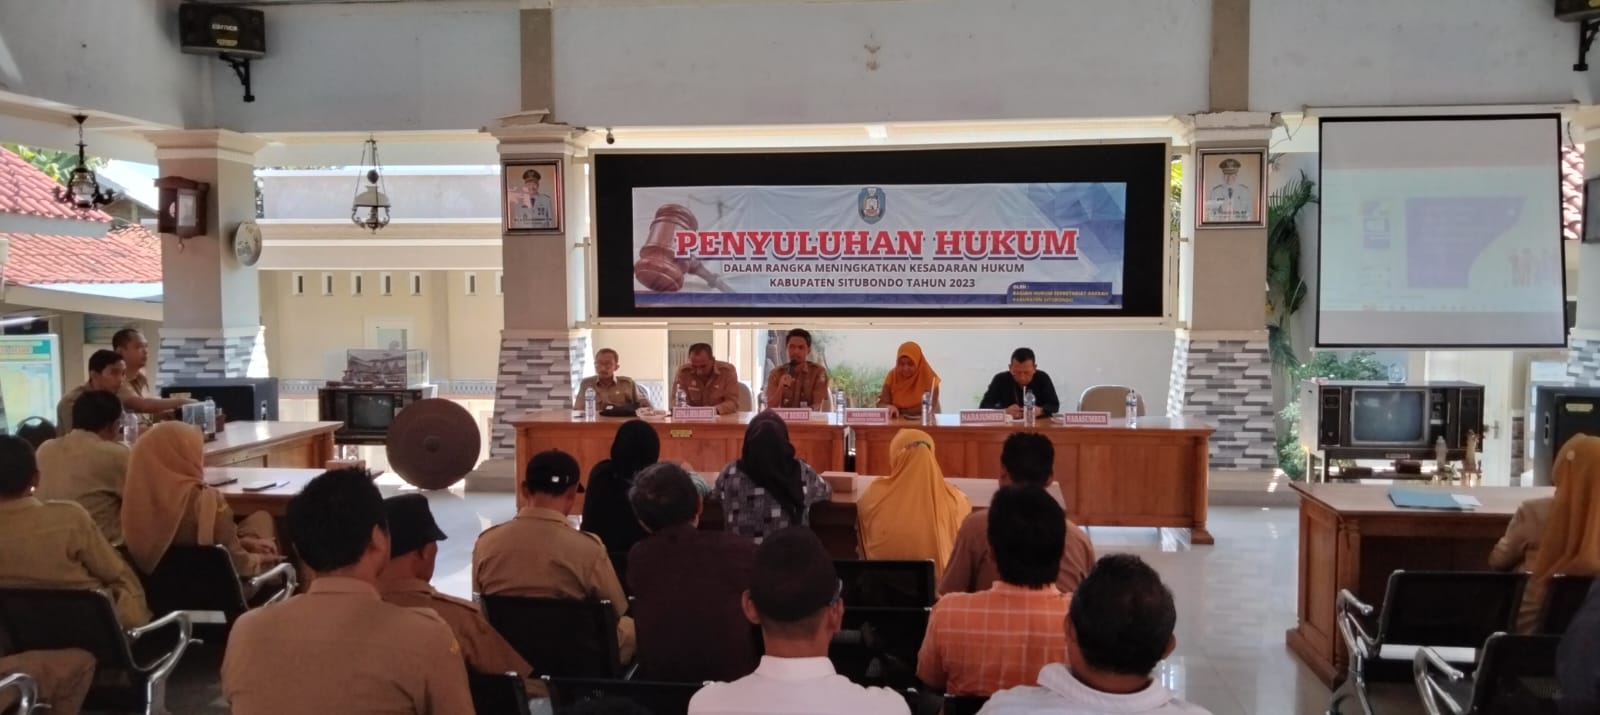 Kegiatan Penyuluhan Hukum di Desa Besuki Kecamatan Besuki Kabupaten Situbondo Tahun 2023